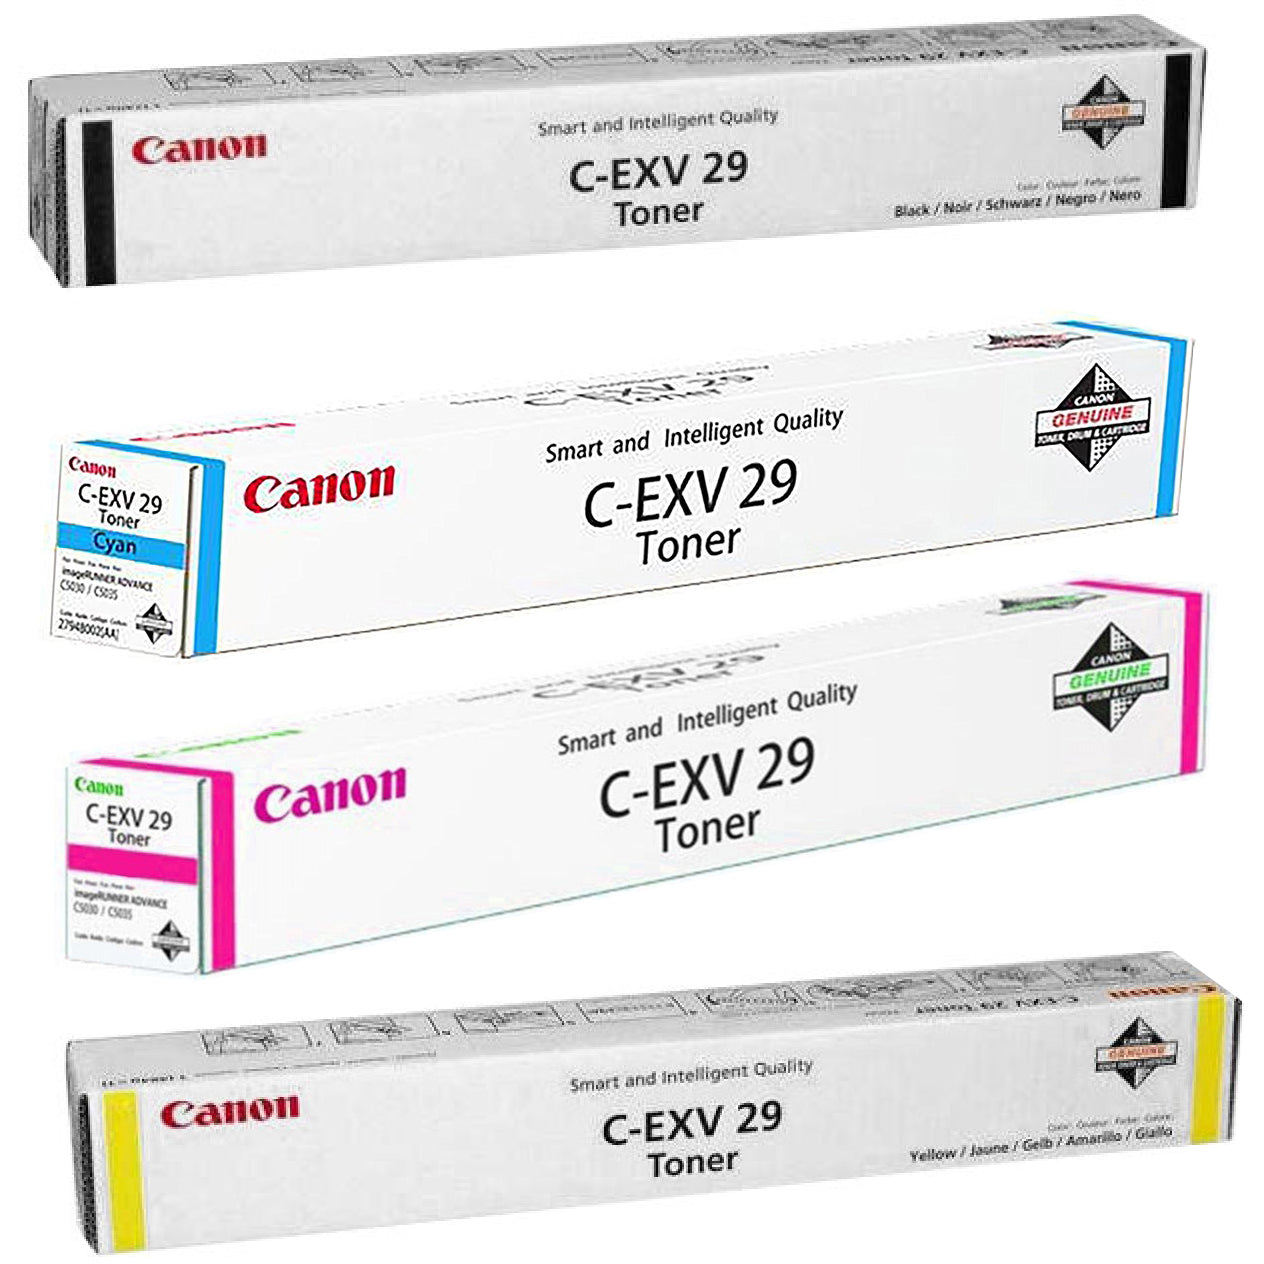 Canon CEXV29   Toner Cartridge  for Use in Canon IR Adv C5030 C5035 C5235 C5240